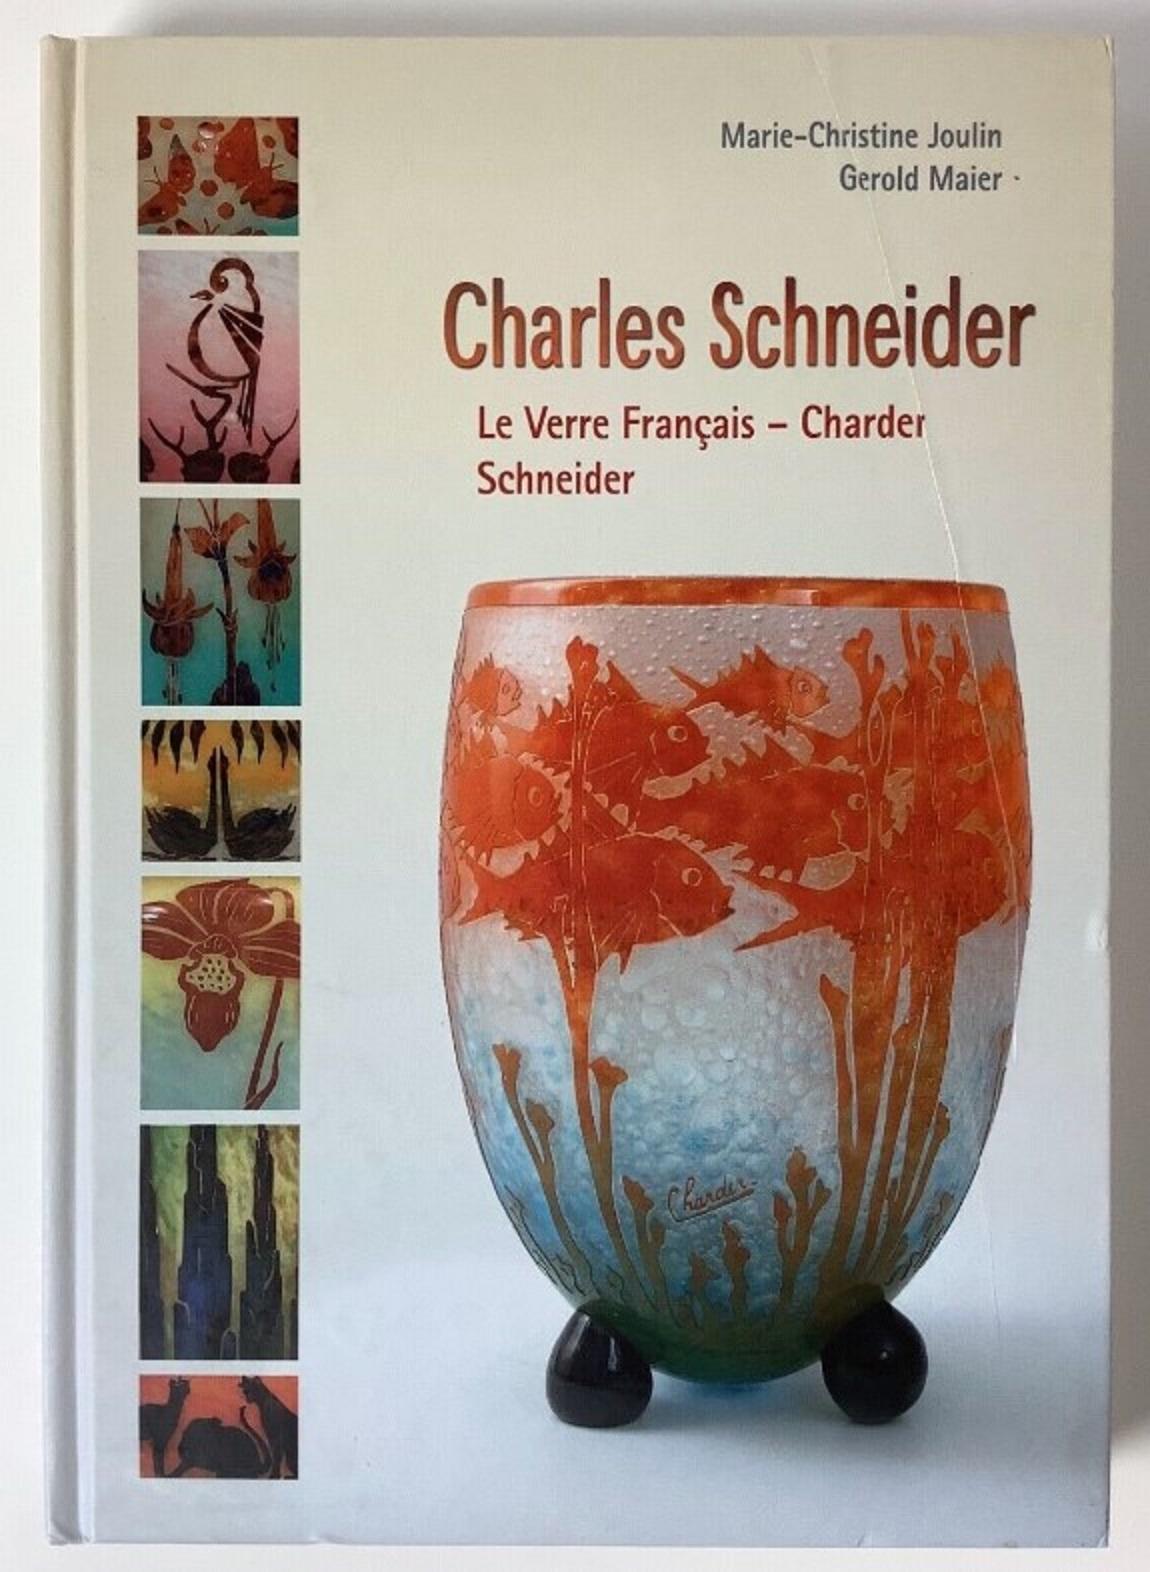 Signe : Charder
Charder est un nom composé de la première partie de Charles et de la deuxième partie de Schnieder. Il a parfois été apposé sur des verres conçus par Charles Schneider, notamment sur des pièces de la ligne Le Verre Français.
Le Verre